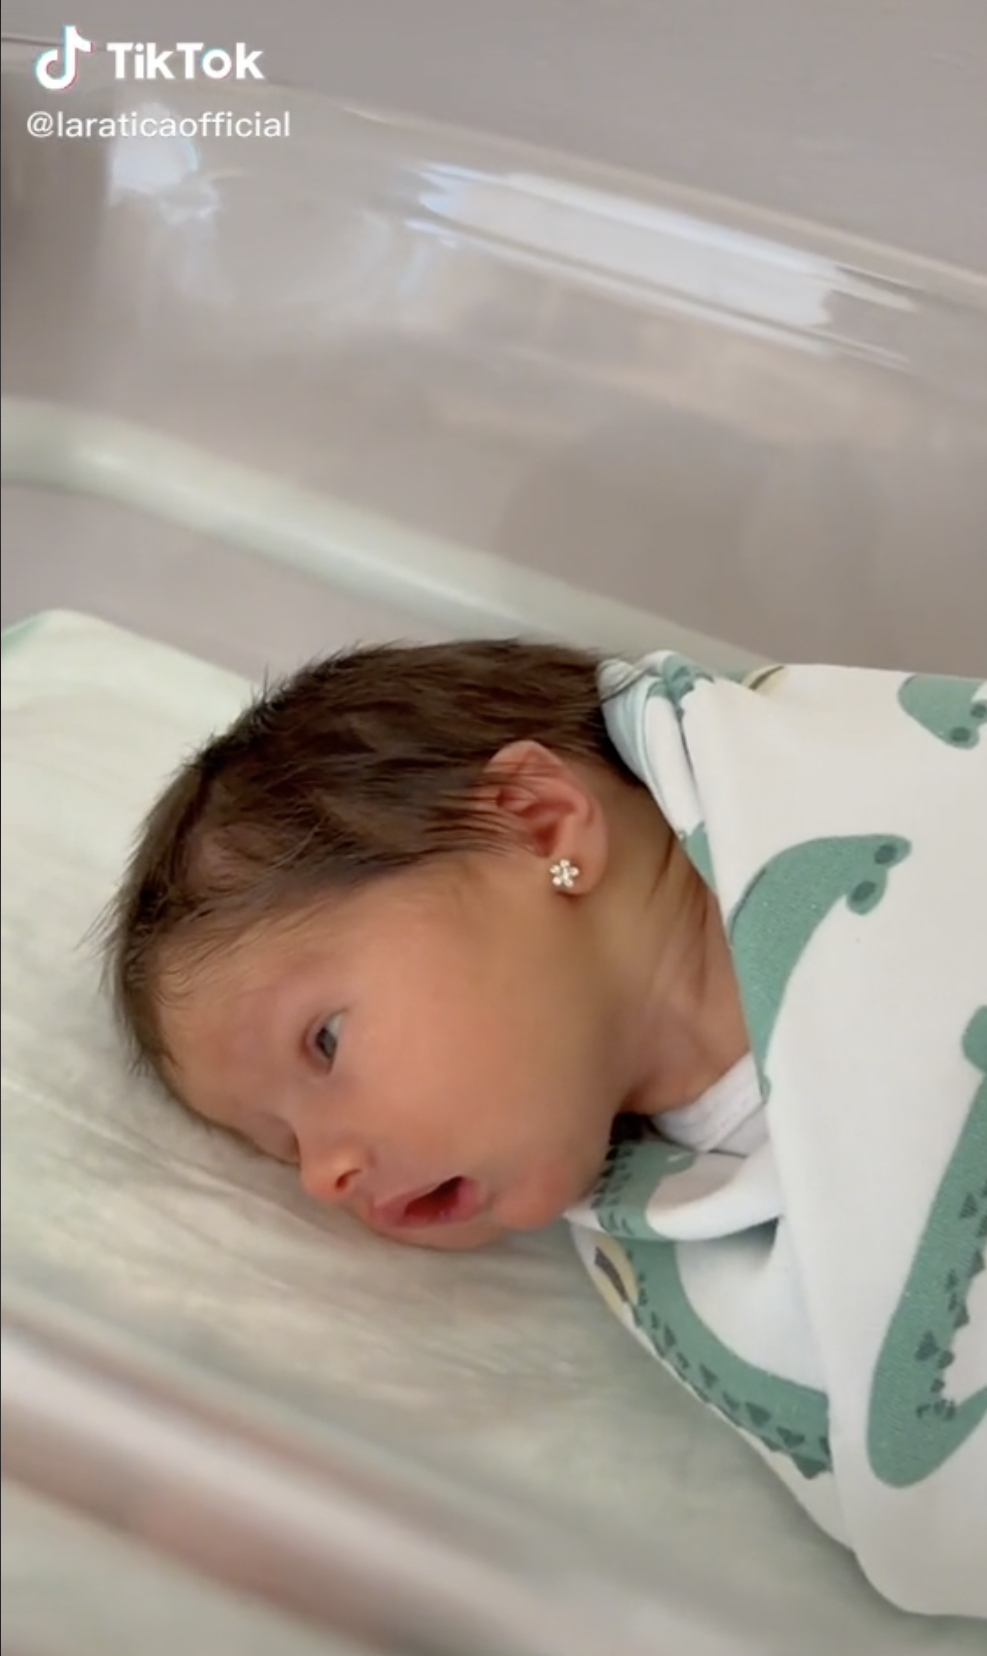 Das kleine Mädchen, Lara im Krankenhaus. | Quelle: https://www.tiktok.com/@laraticaofficial/video/7056685024967429382